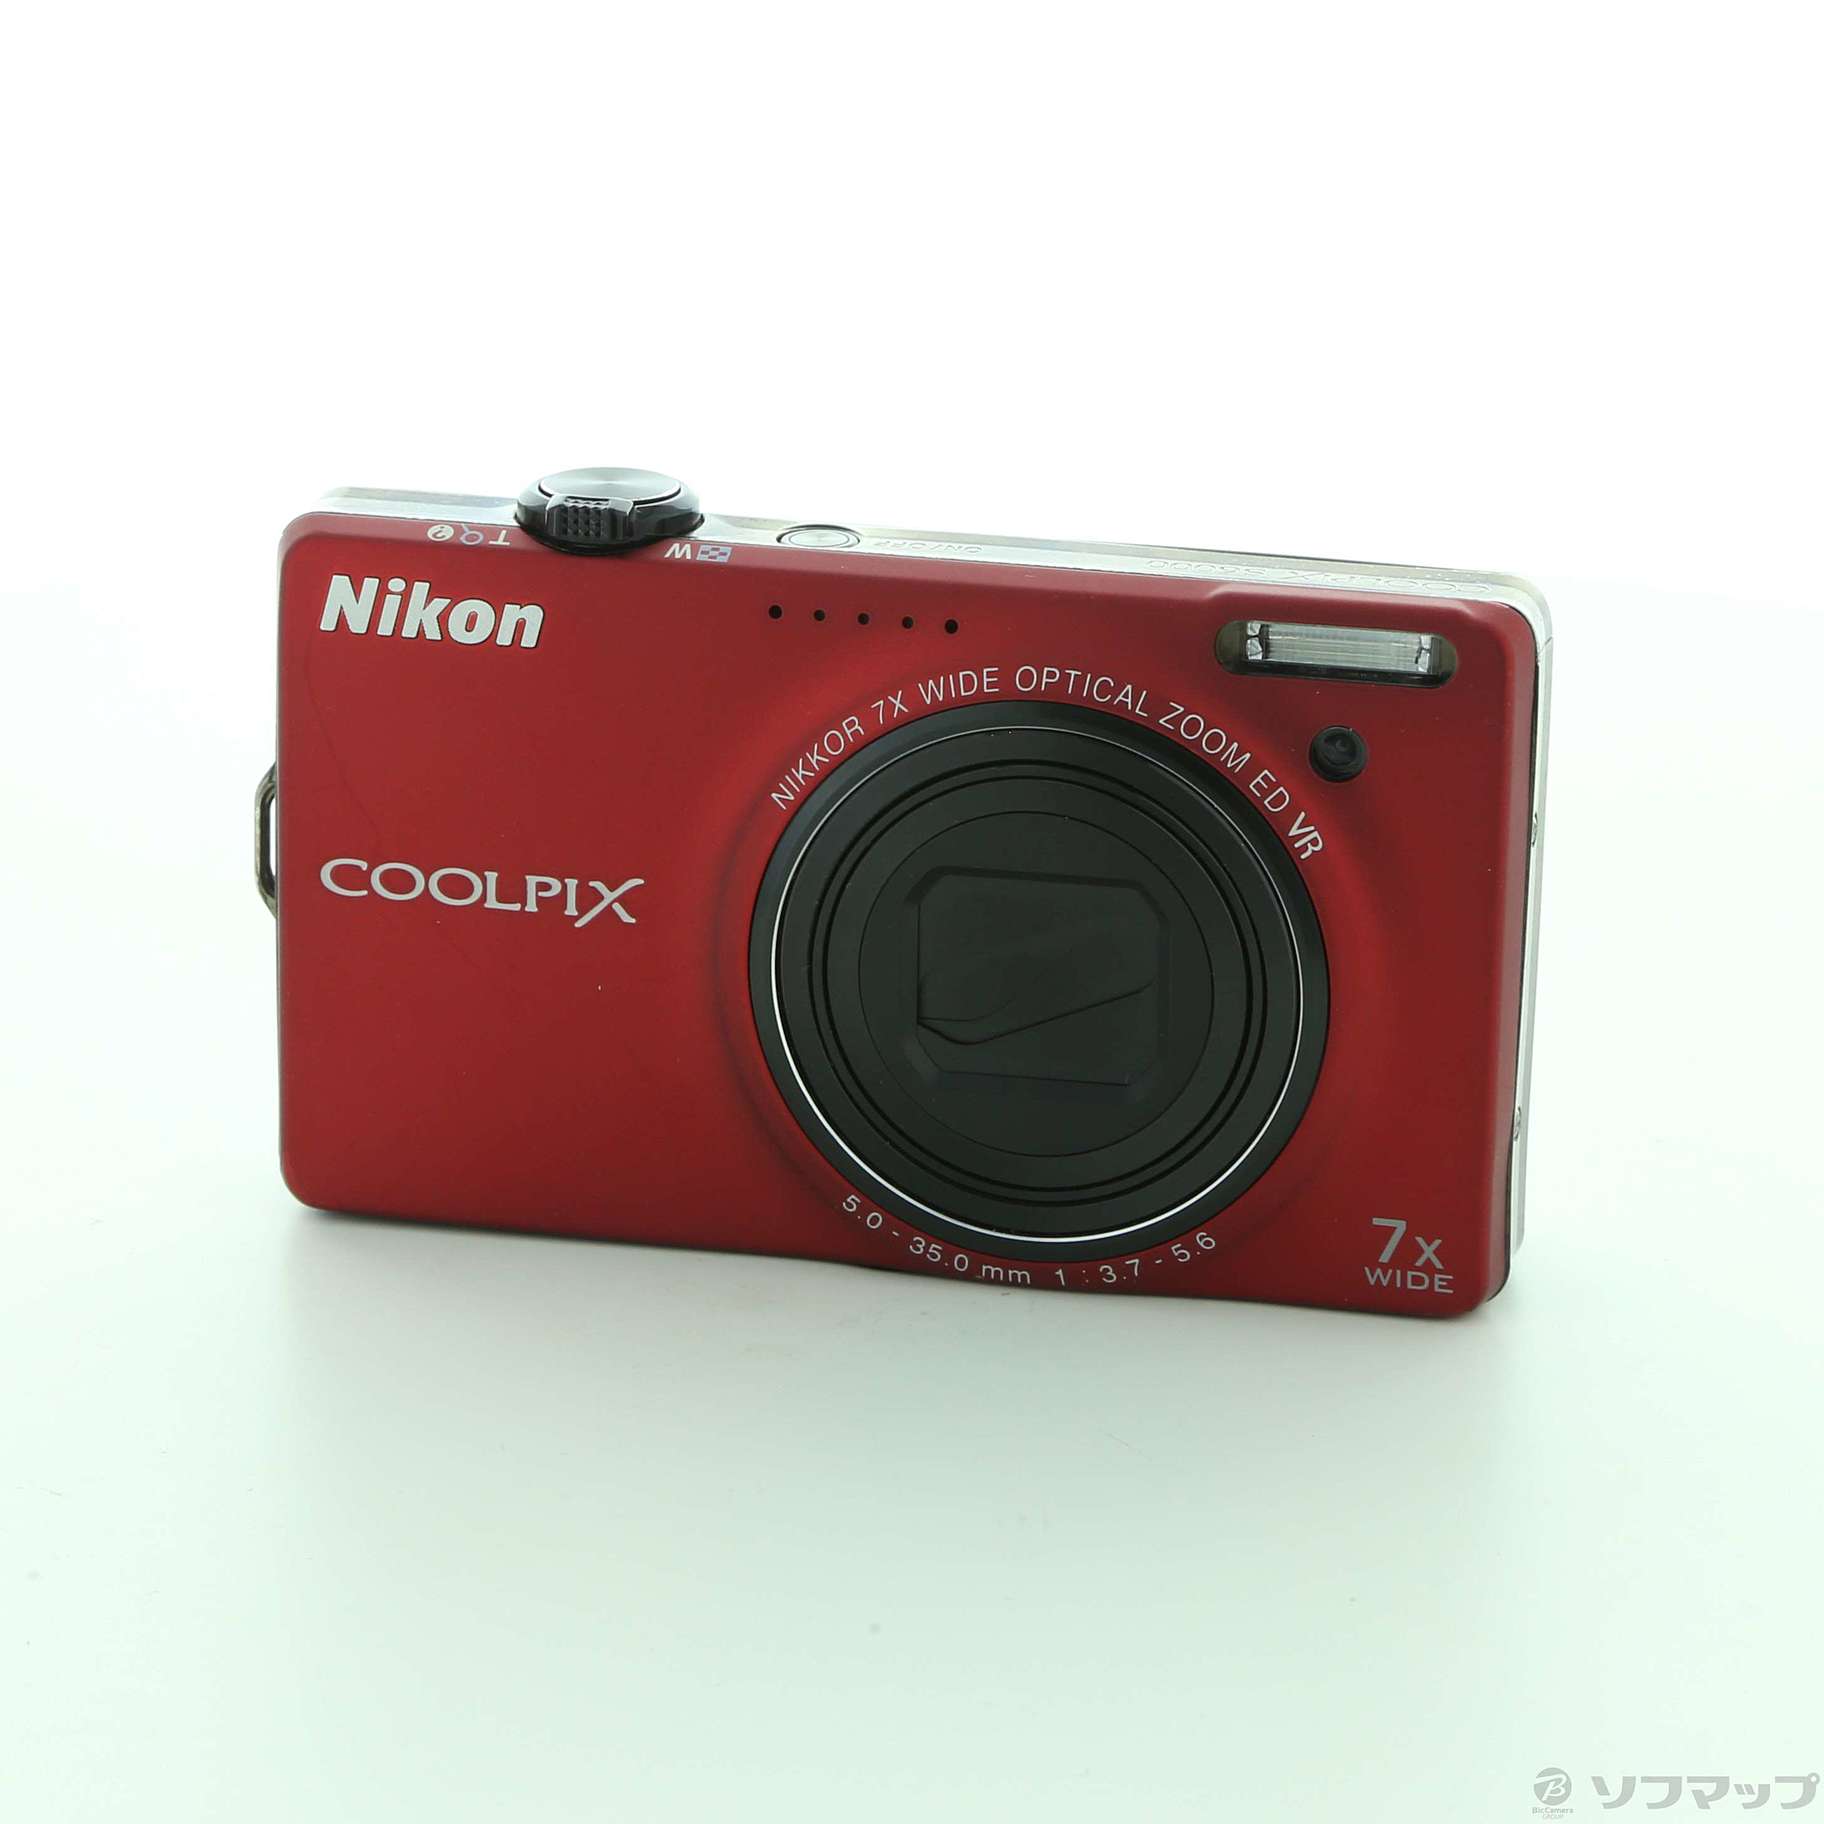 あす楽対応 【動作品】Nikon Style デジタルカメラ COOLPIX COOLPIX 